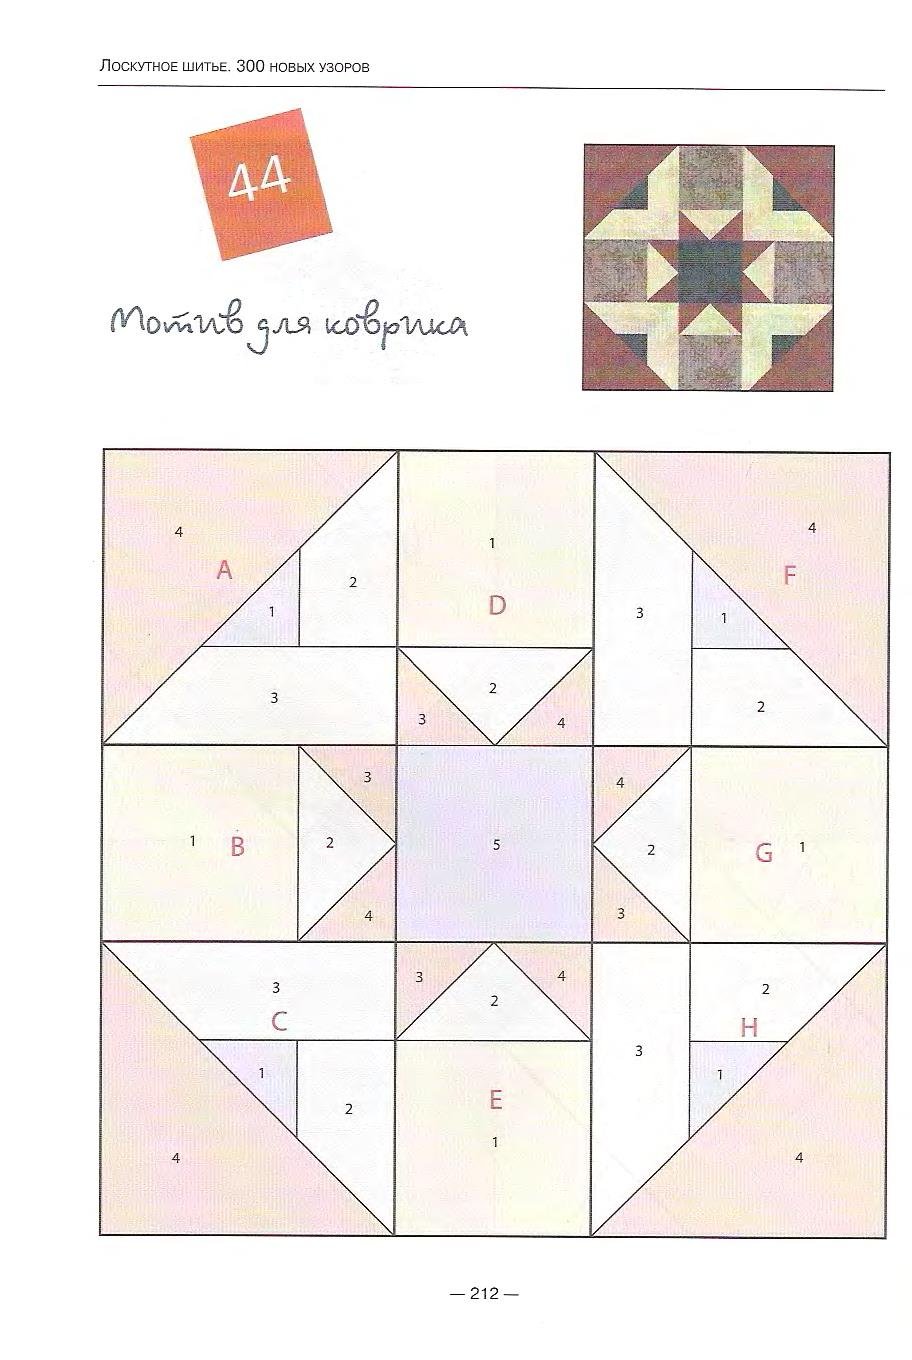 Лоскутная техника пэчворк русский квадрат схема